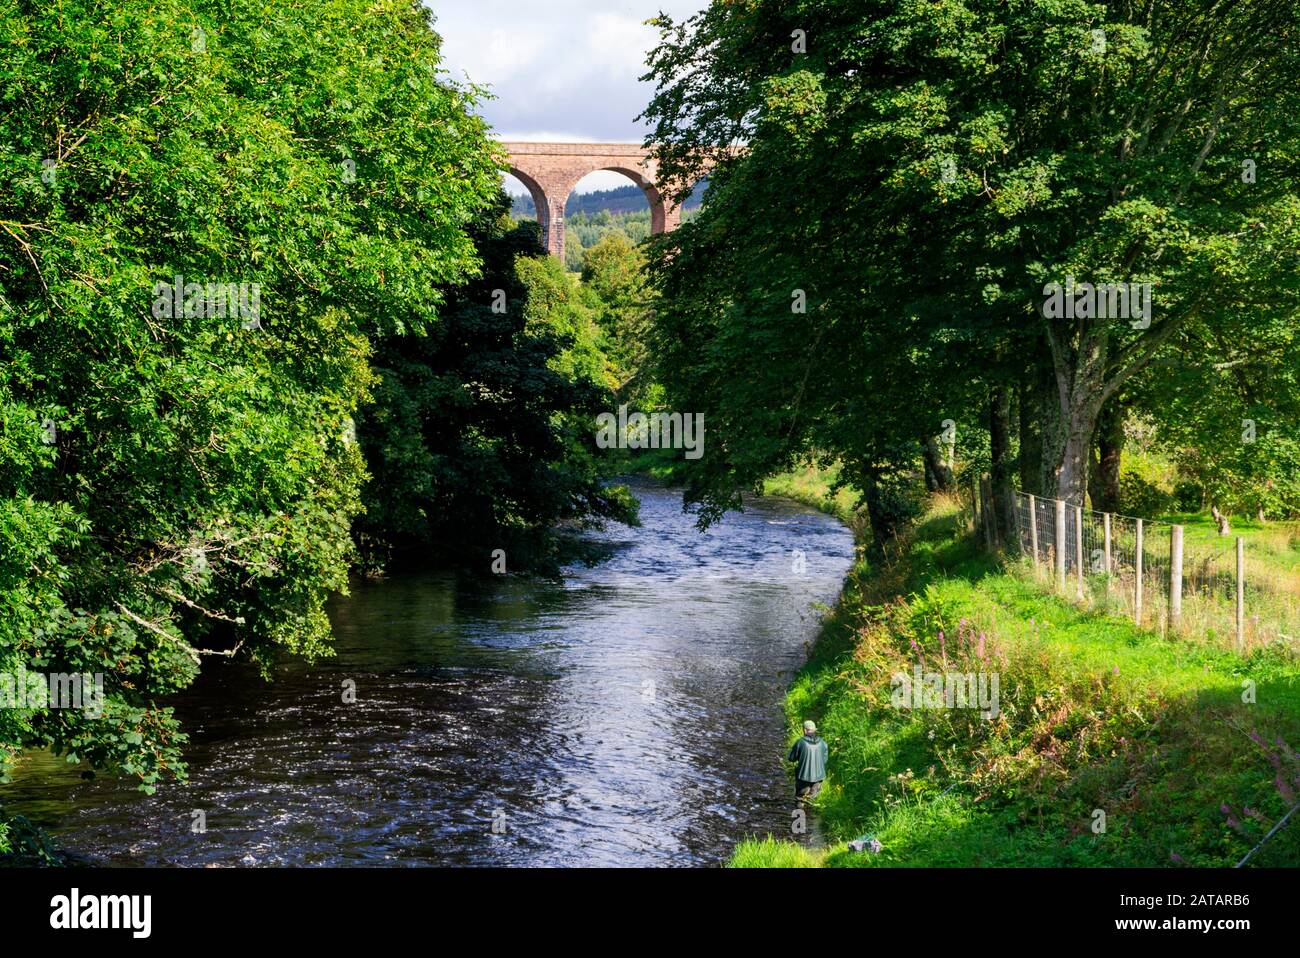 Pêcheur de mouche dans la rivière Nairn dans les Highlands écossais d'Inverness-shire Ecosse Royaume-Uni Banque D'Images